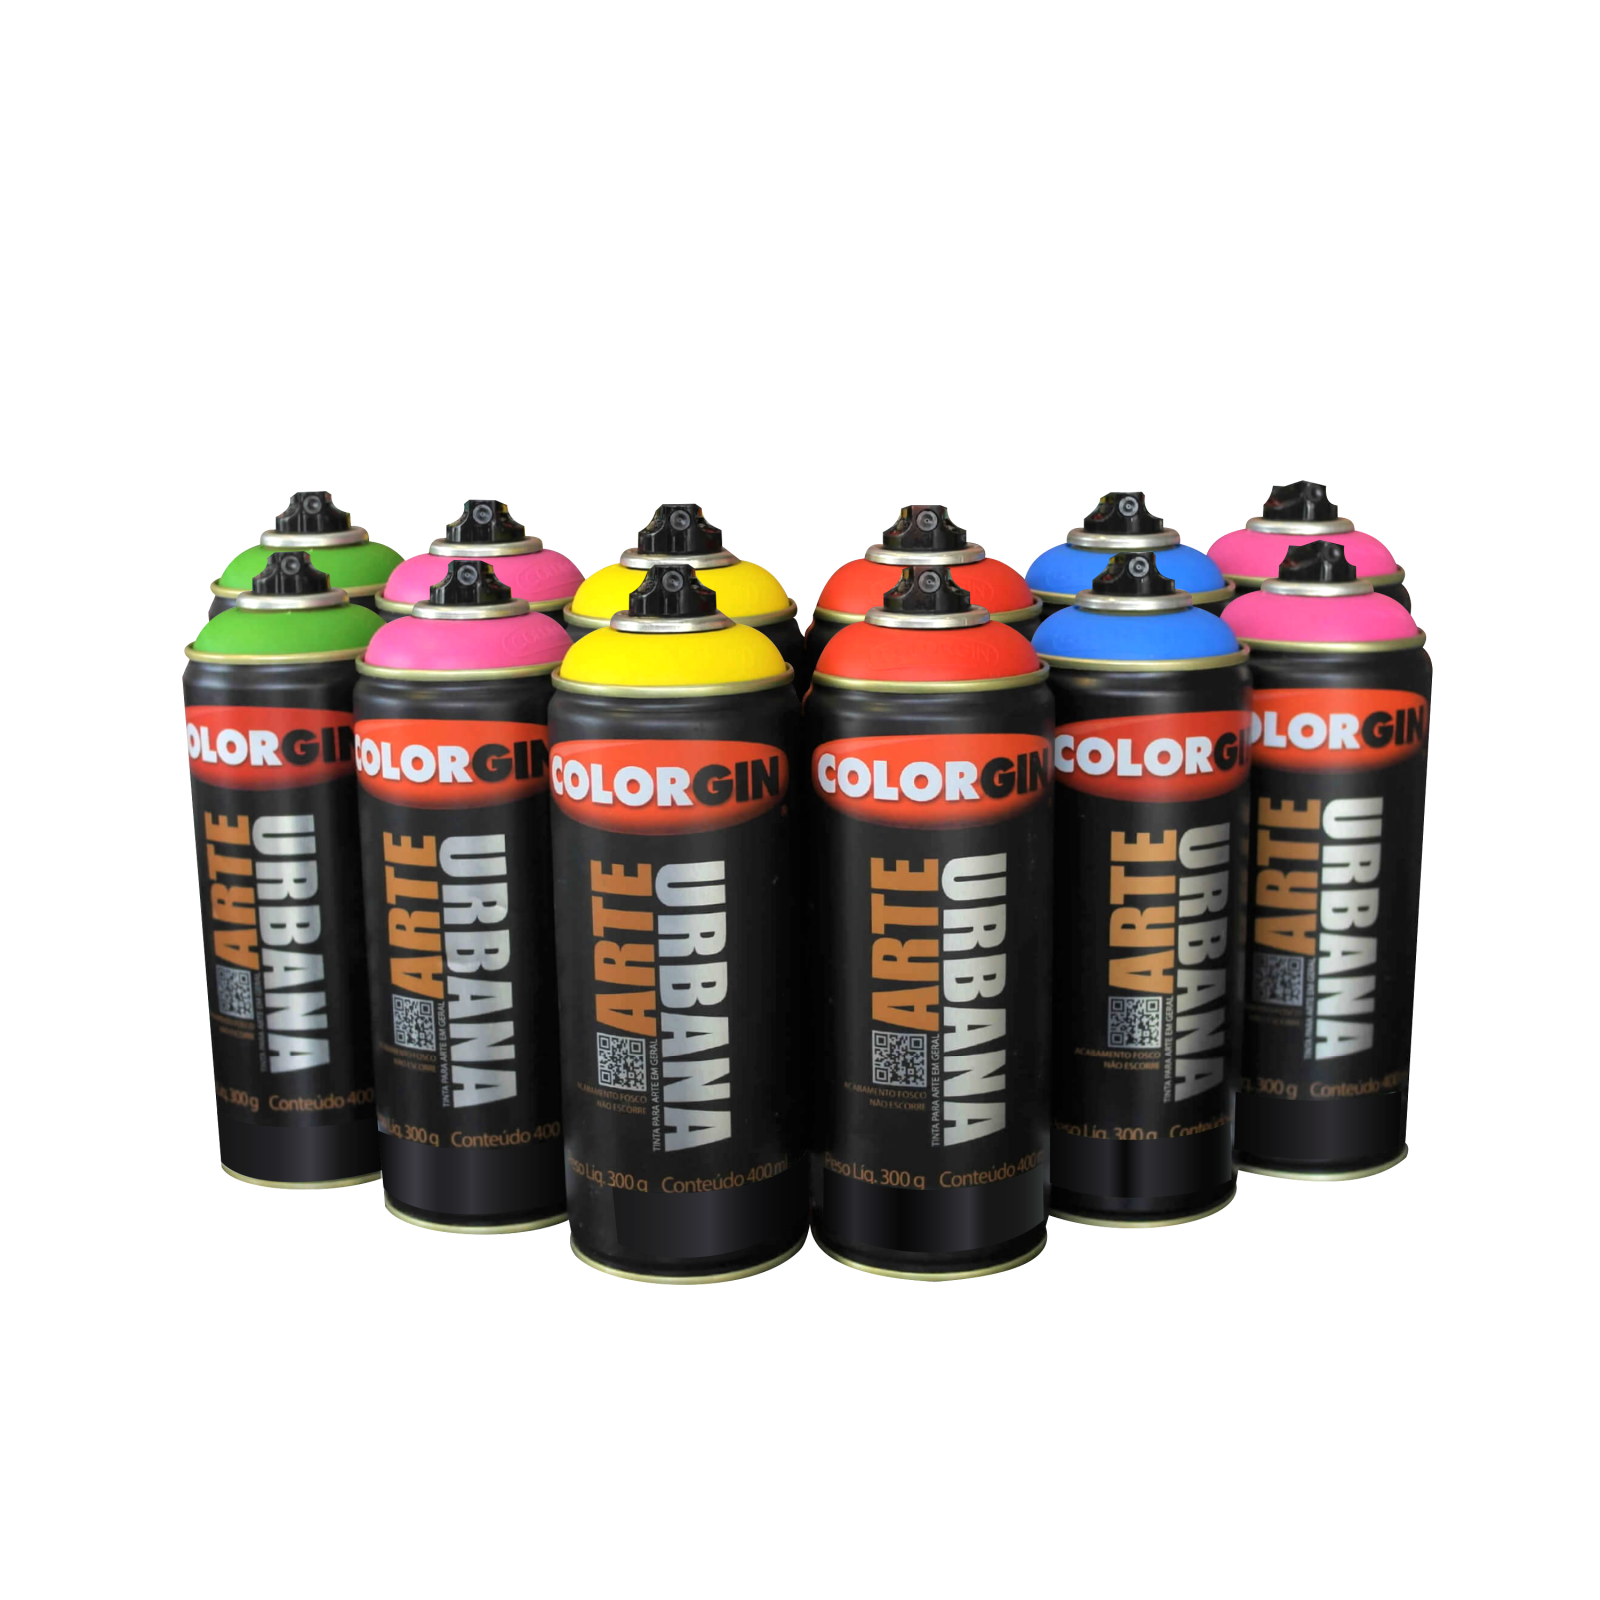 Kit Colorgin Arte Urbana com 12 latas (cores a sua escolha) - Mundo Graffiti